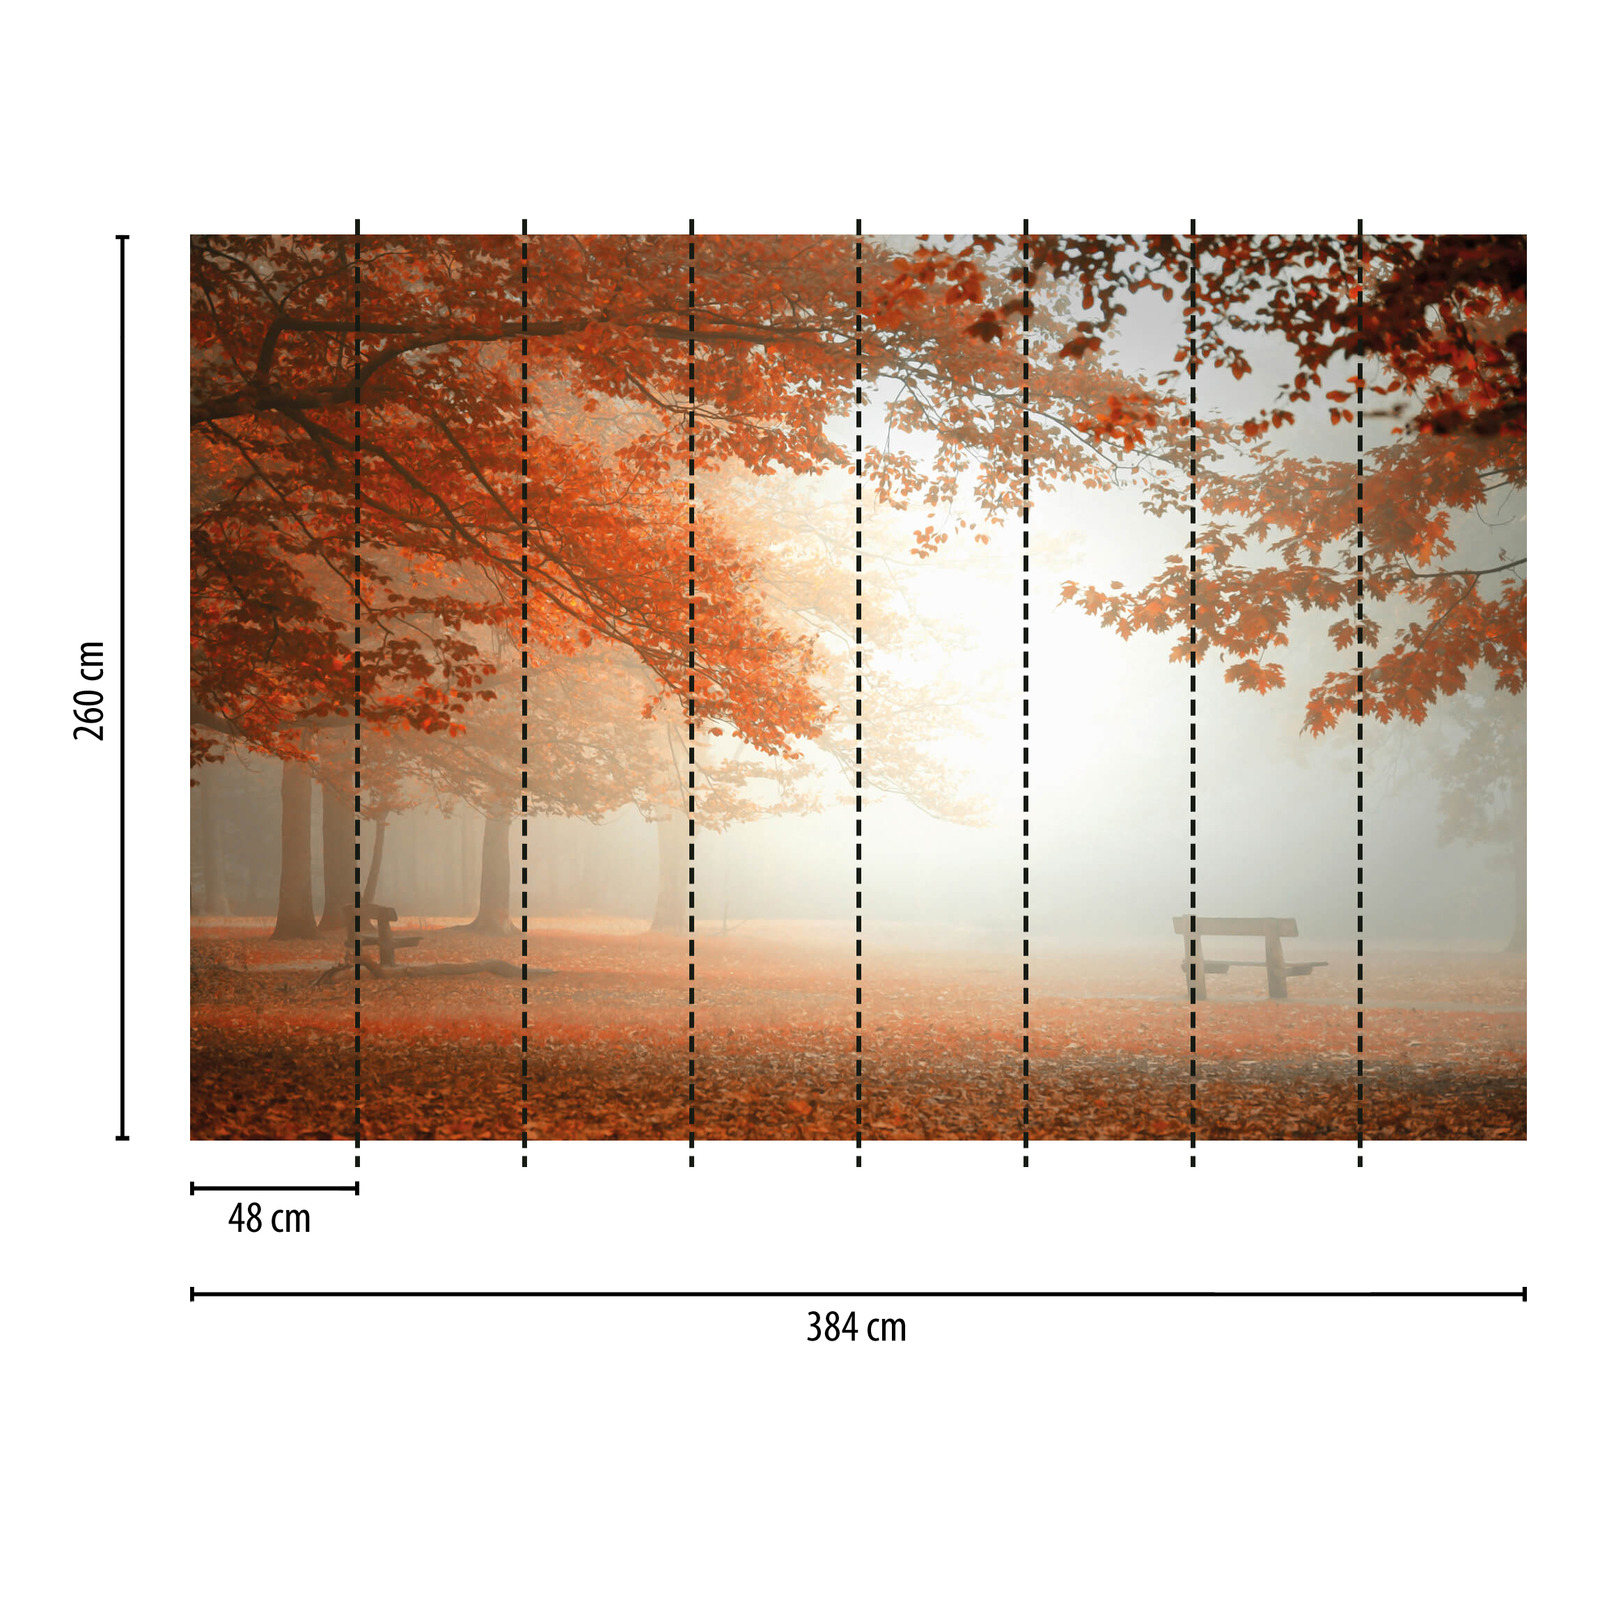             Papier peint Forêt d'automne dans le brouillard - orange, rouge, marron
        